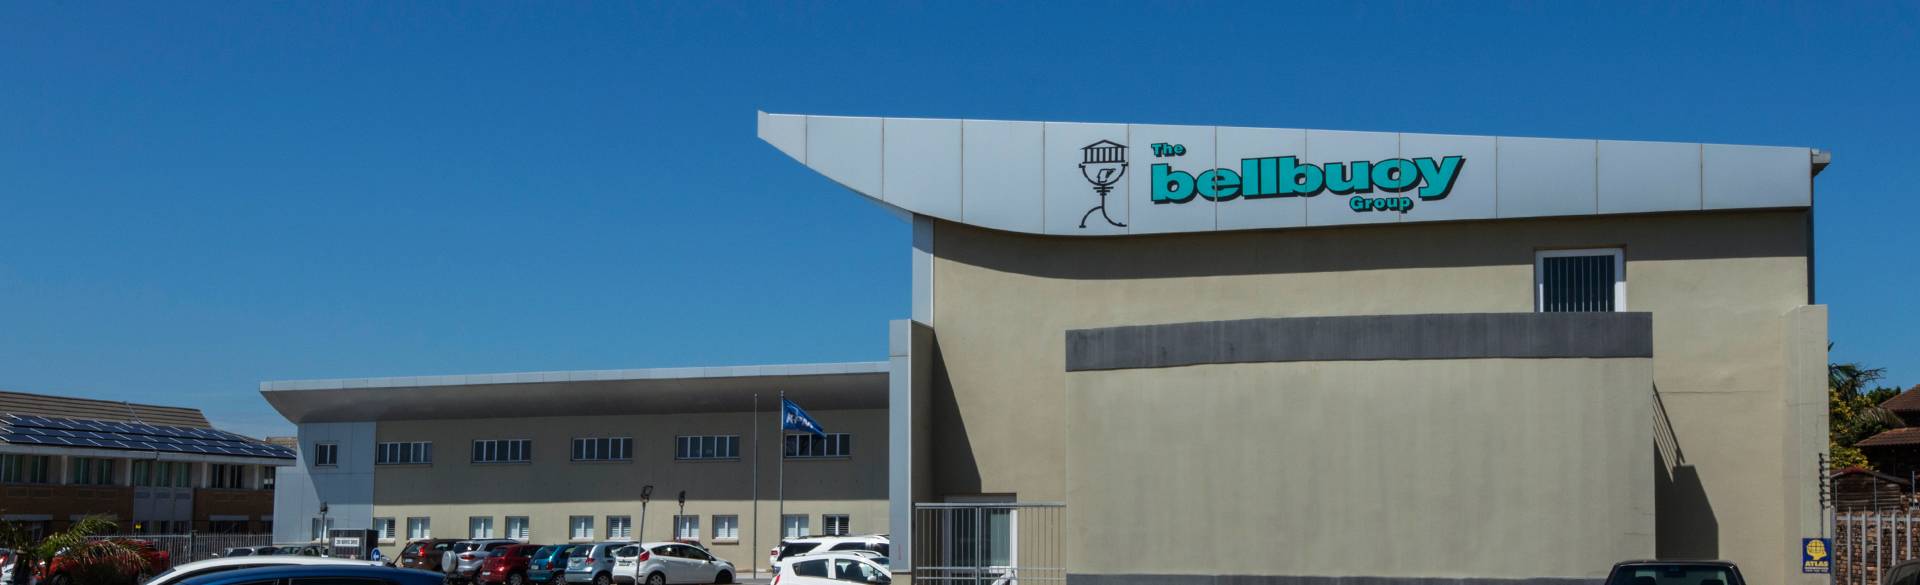 Bellbuoy-property-management-port-elizabeth-facilities-boardroom